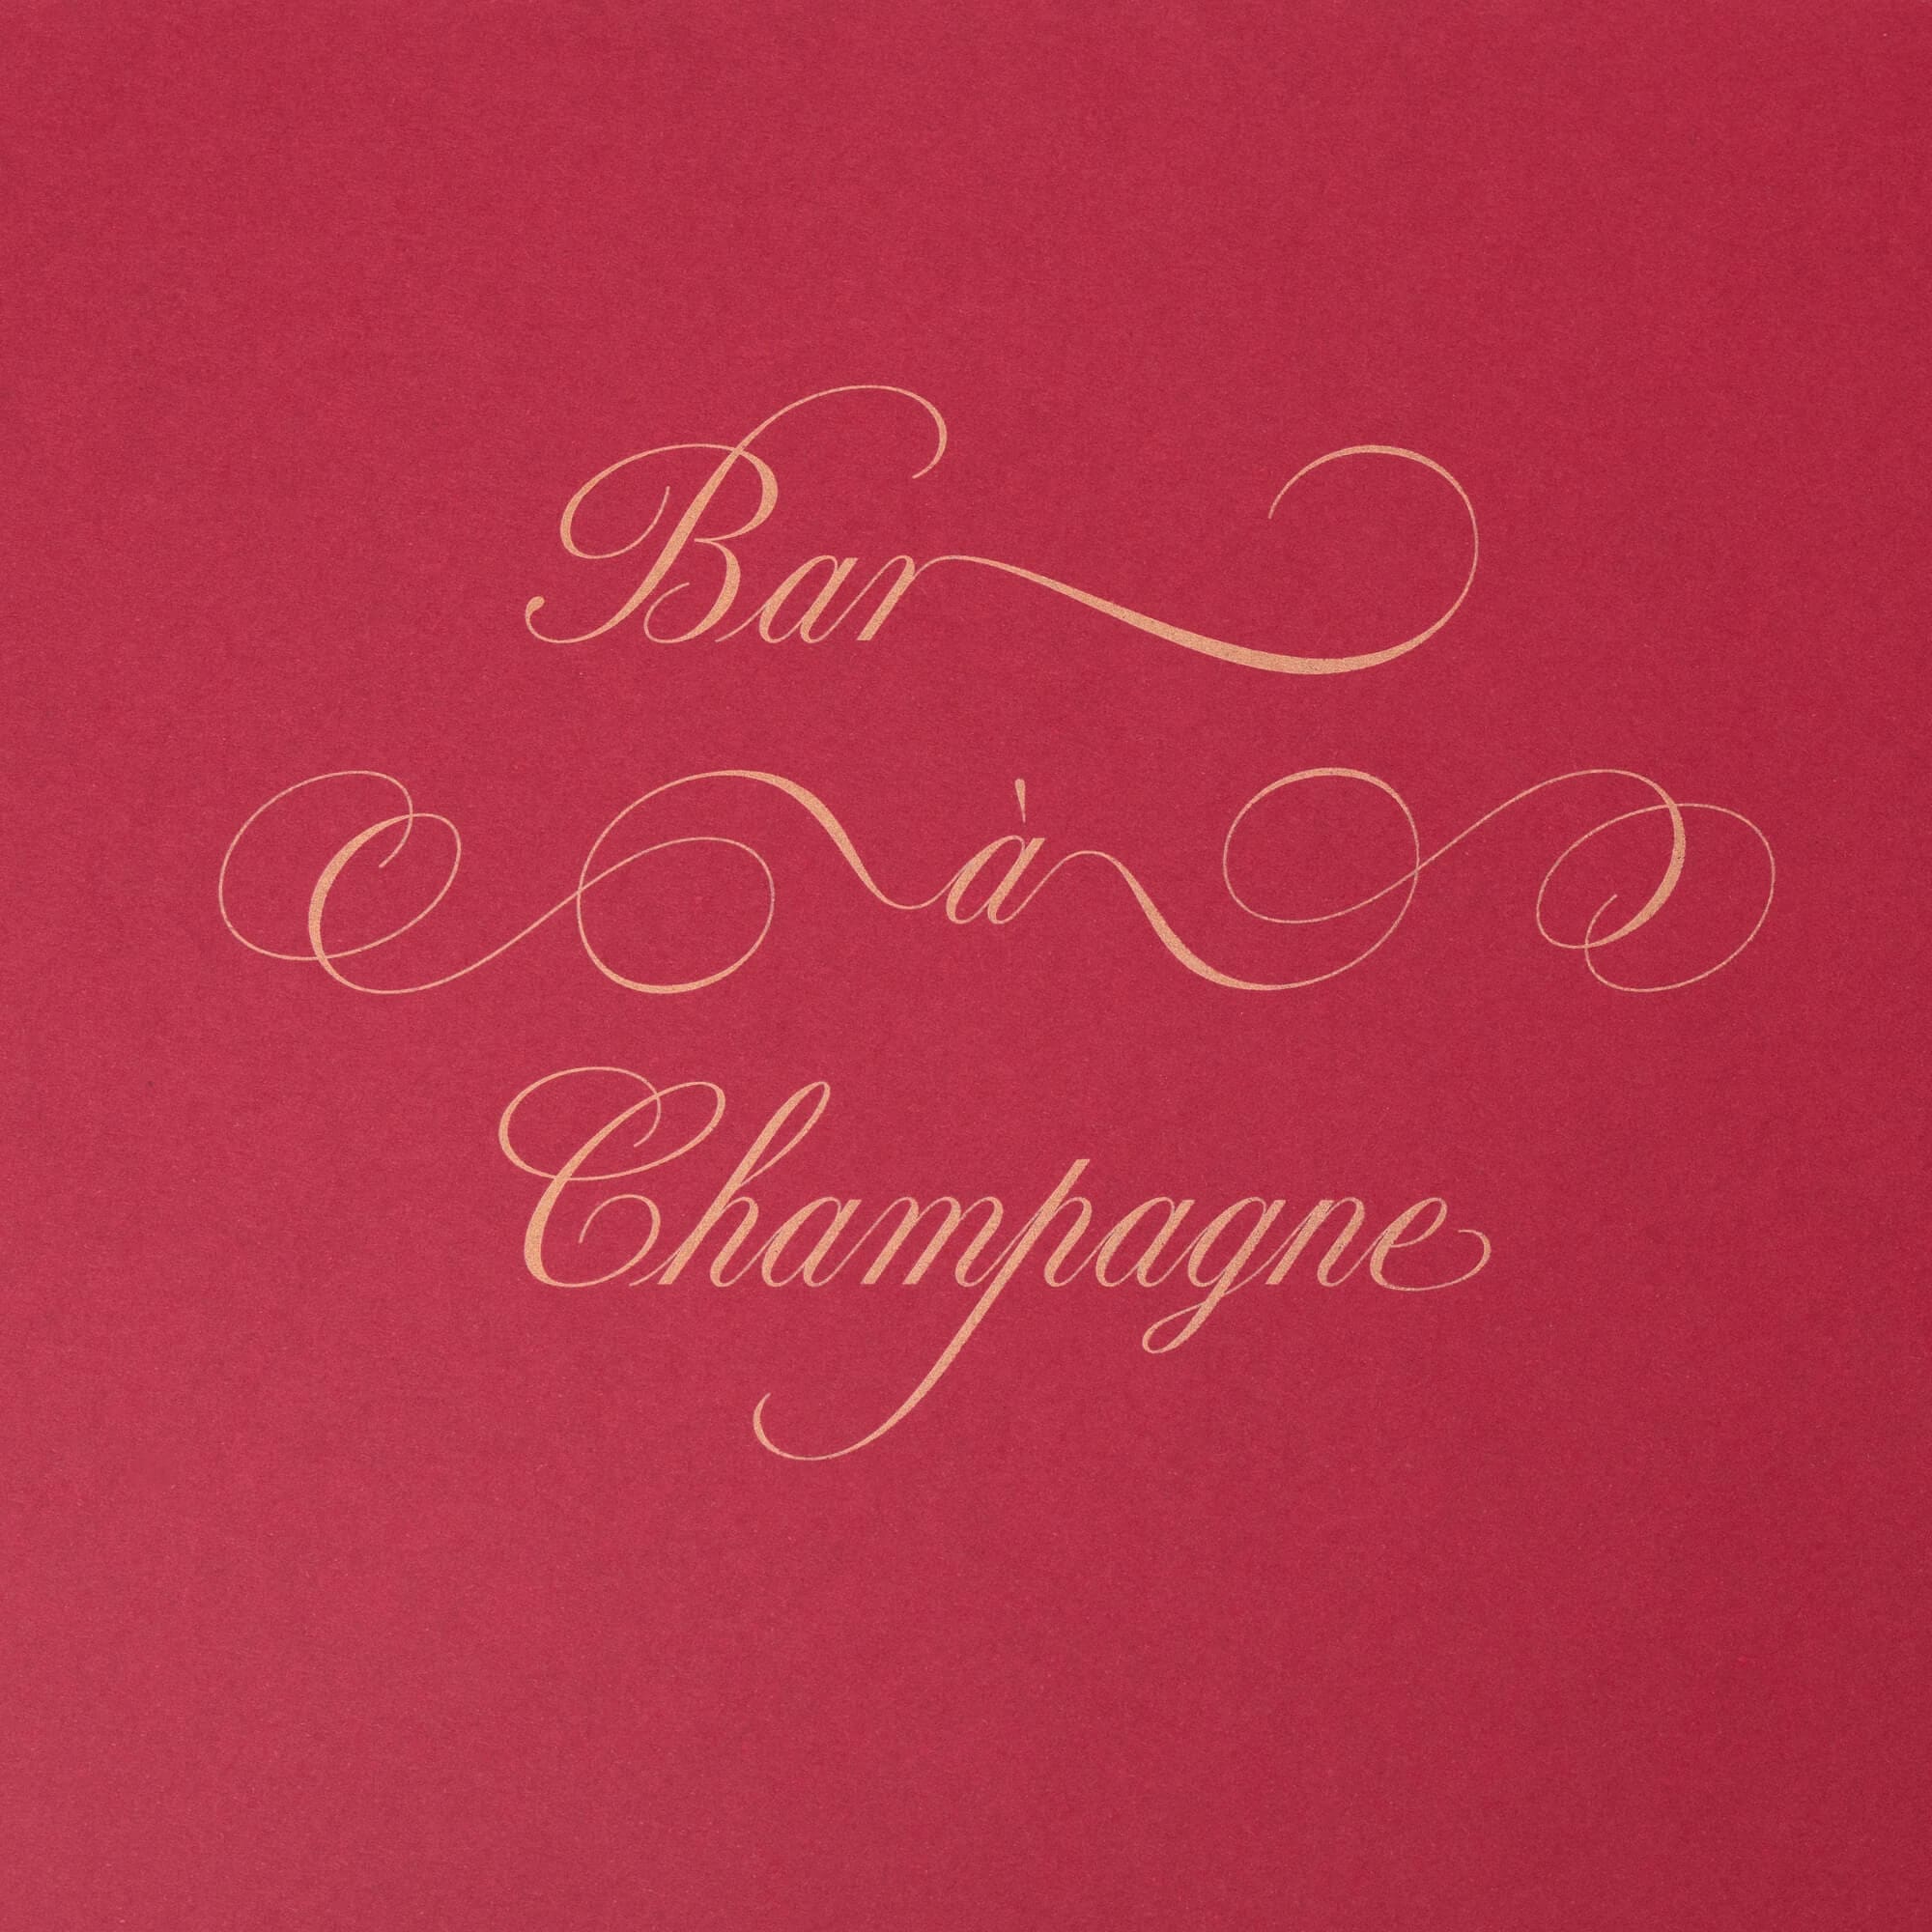 Bar à champagne : composition typographique signé IchetKar pour le room book du château Louise de la Vallière, favorite du roi louis XIV